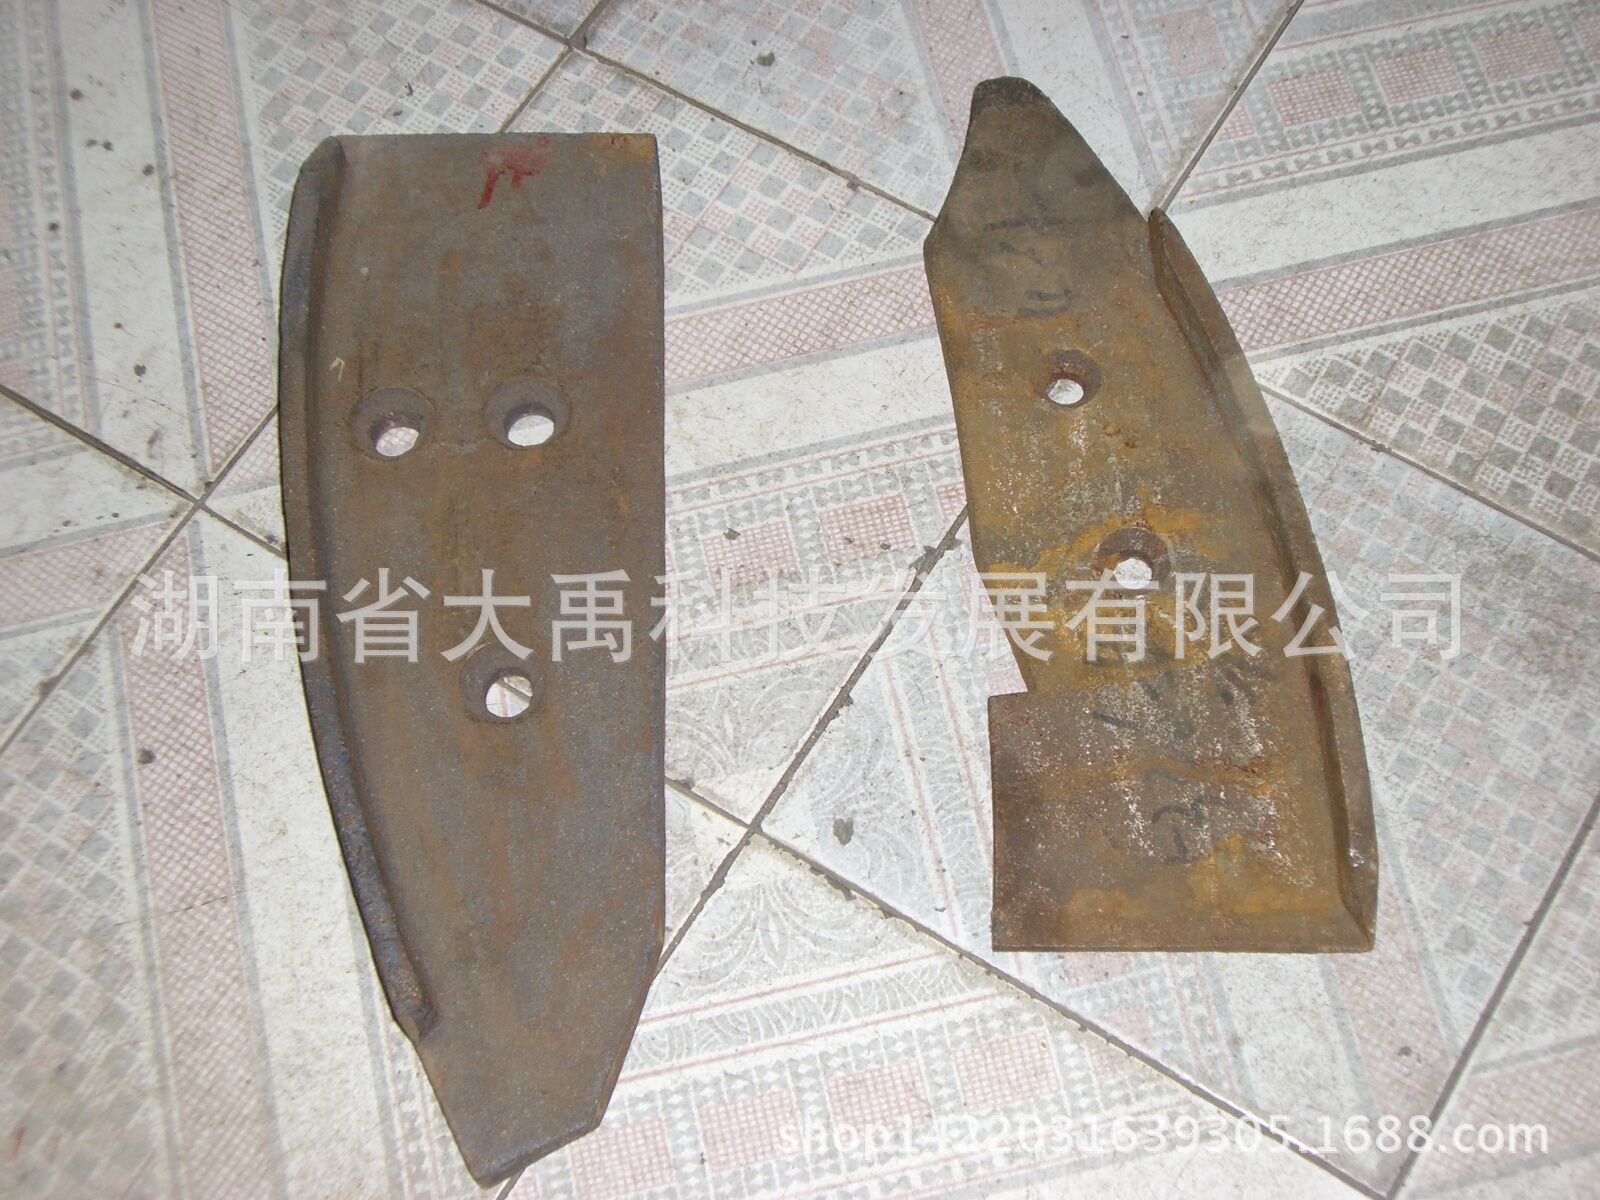 00元 加工定制 是 配件名称 铲刀 配件用途 磨粉 材质 耐磨合金 规格